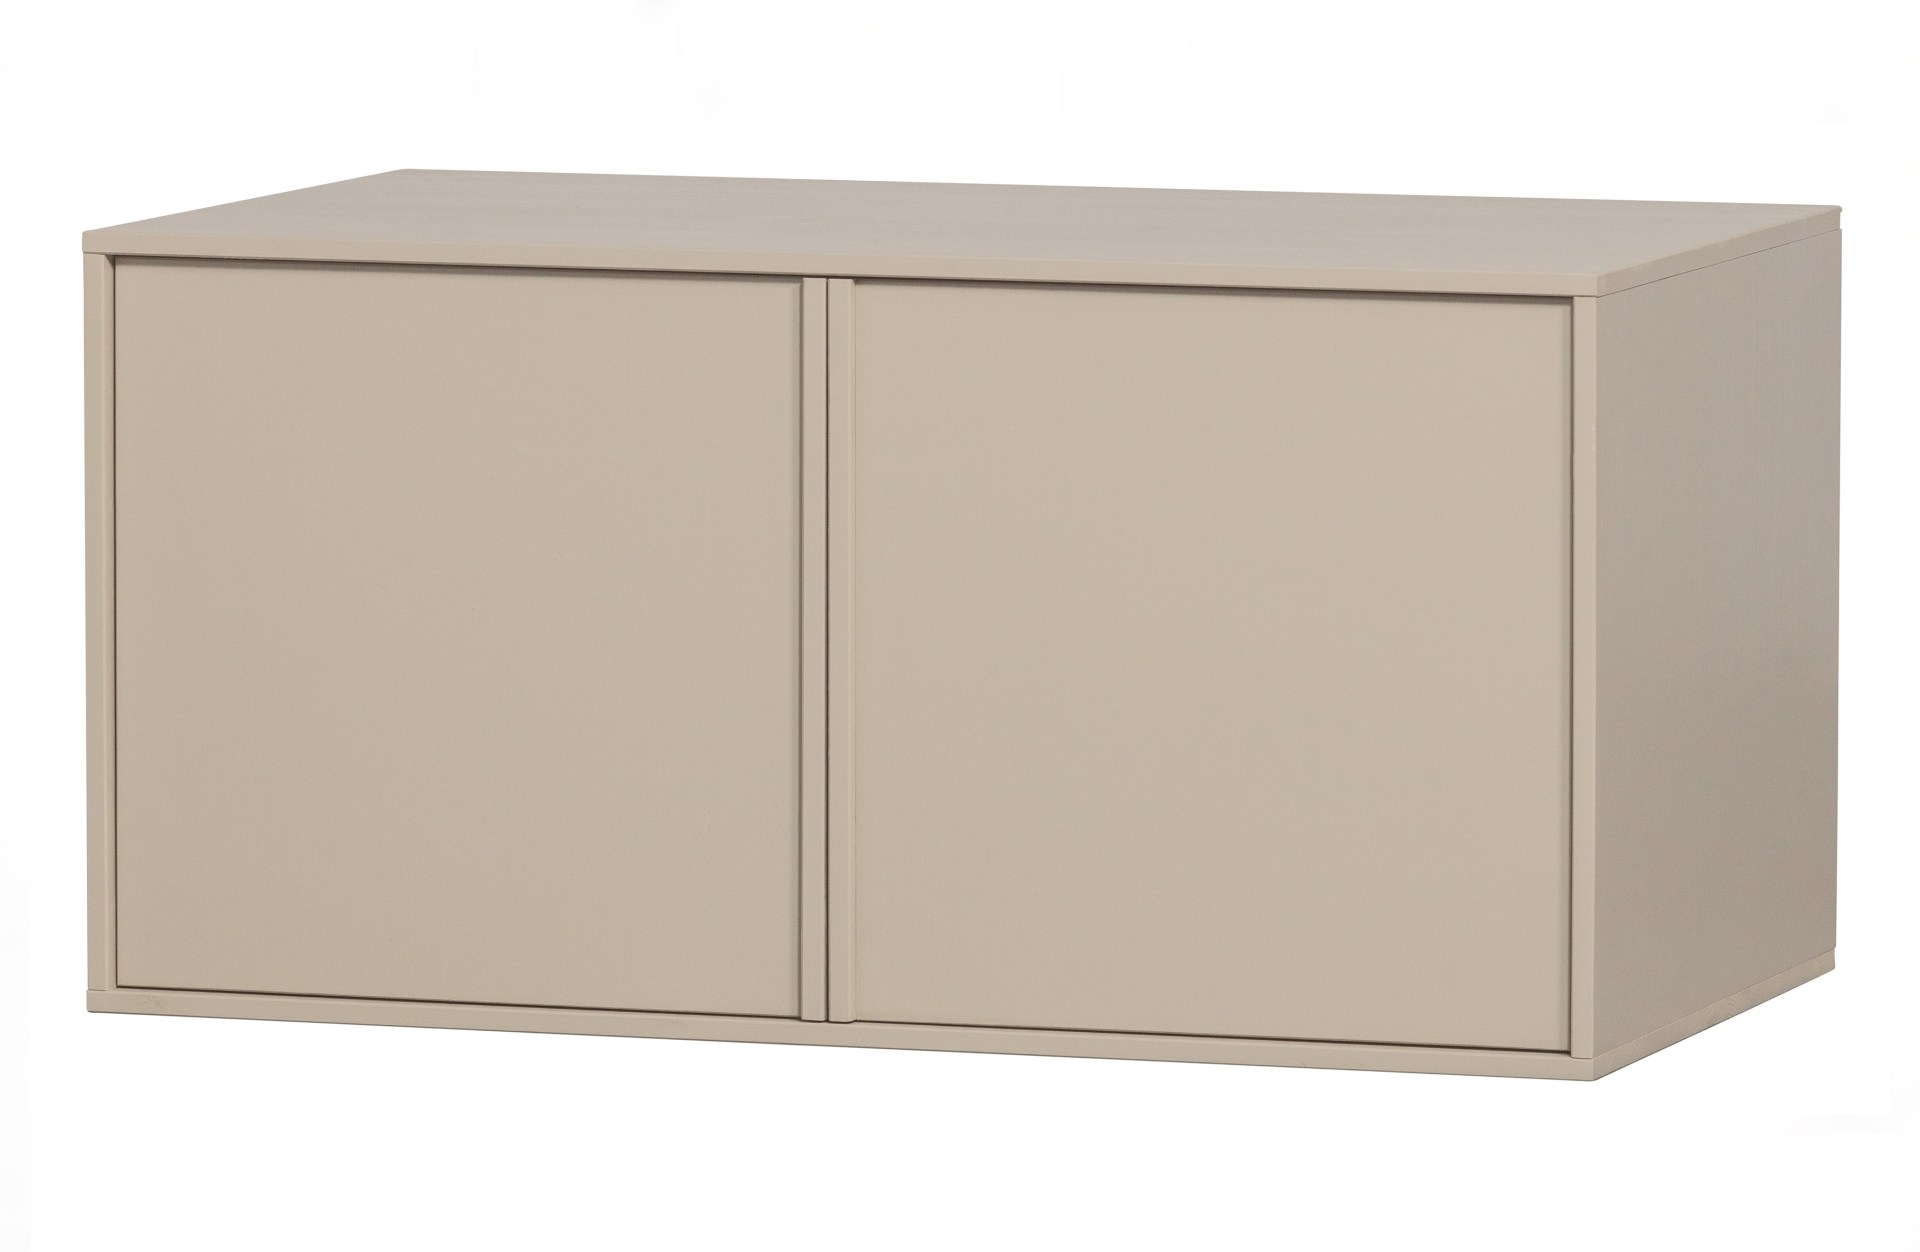 Der Modulschrank Daily Closet überzeugt mit seinem modernen Design. Gefertigt wurde er aus Kiefernholz, welches einen grauen Farbton besitzt. Der Schrank verfügt über zwei Türen und hat eine Größe von 50x100 cm